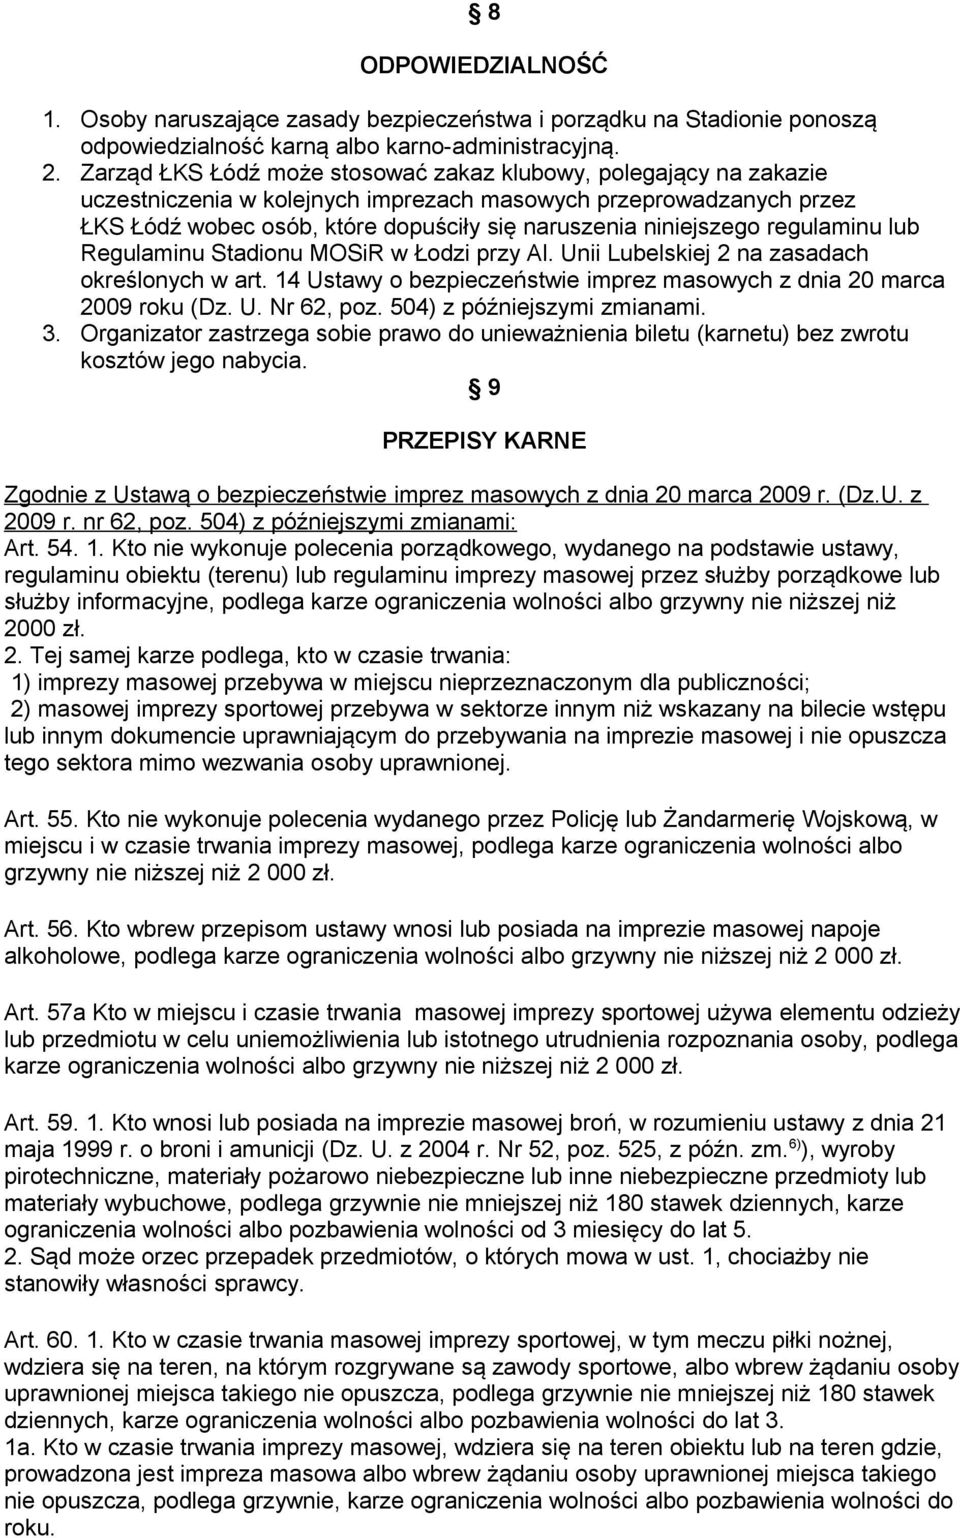 regulaminu lub Regulaminu Stadionu MOSiR w Łodzi przy Al. Unii Lubelskiej 2 na zasadach określonych w art. 14 Ustawy o bezpieczeństwie imprez masowych z dnia 20 marca 2009 roku (Dz. U. Nr 62, poz.